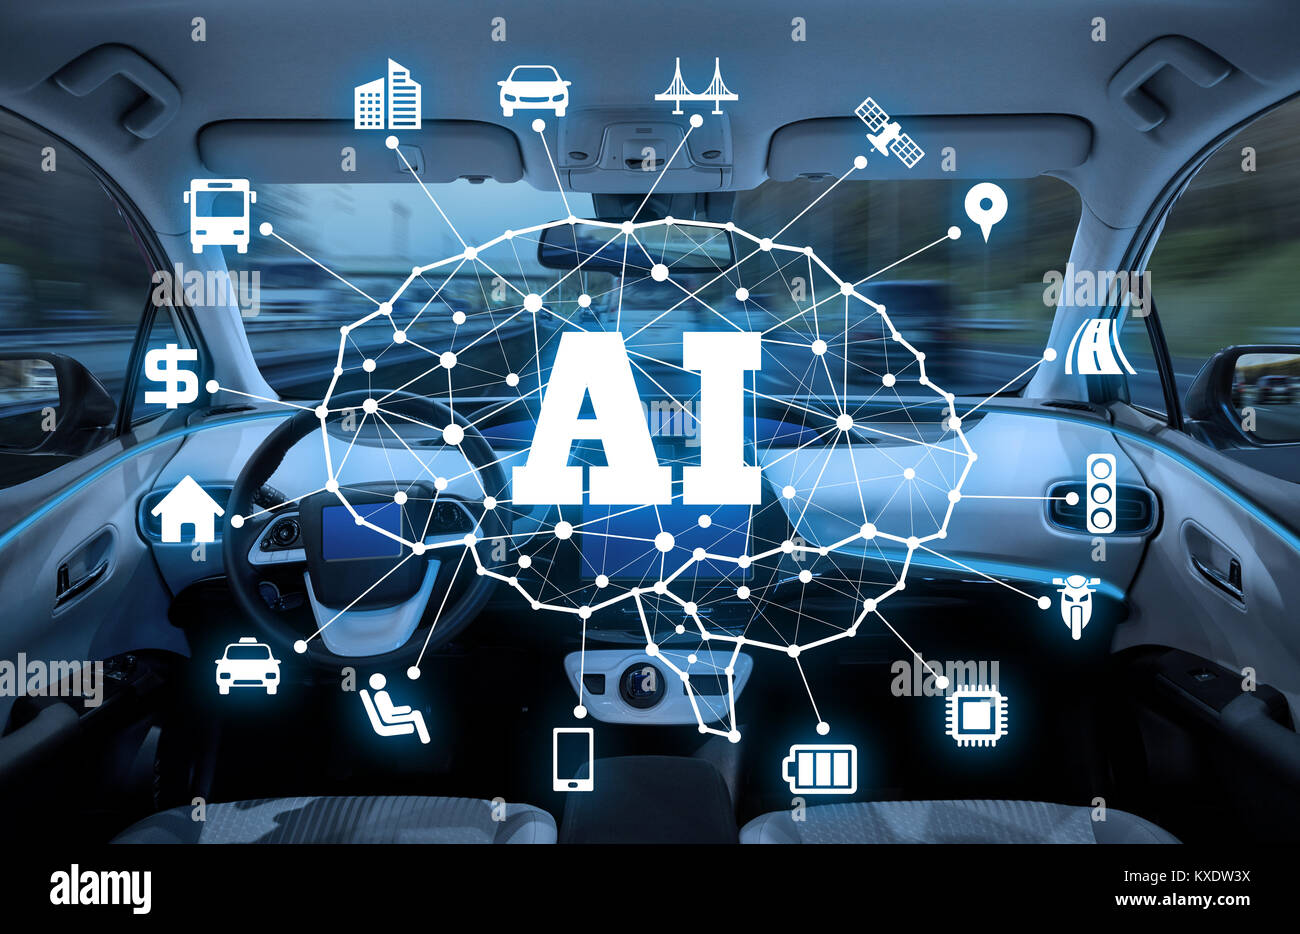 artificial intelligence in autonomous vehicles pdf